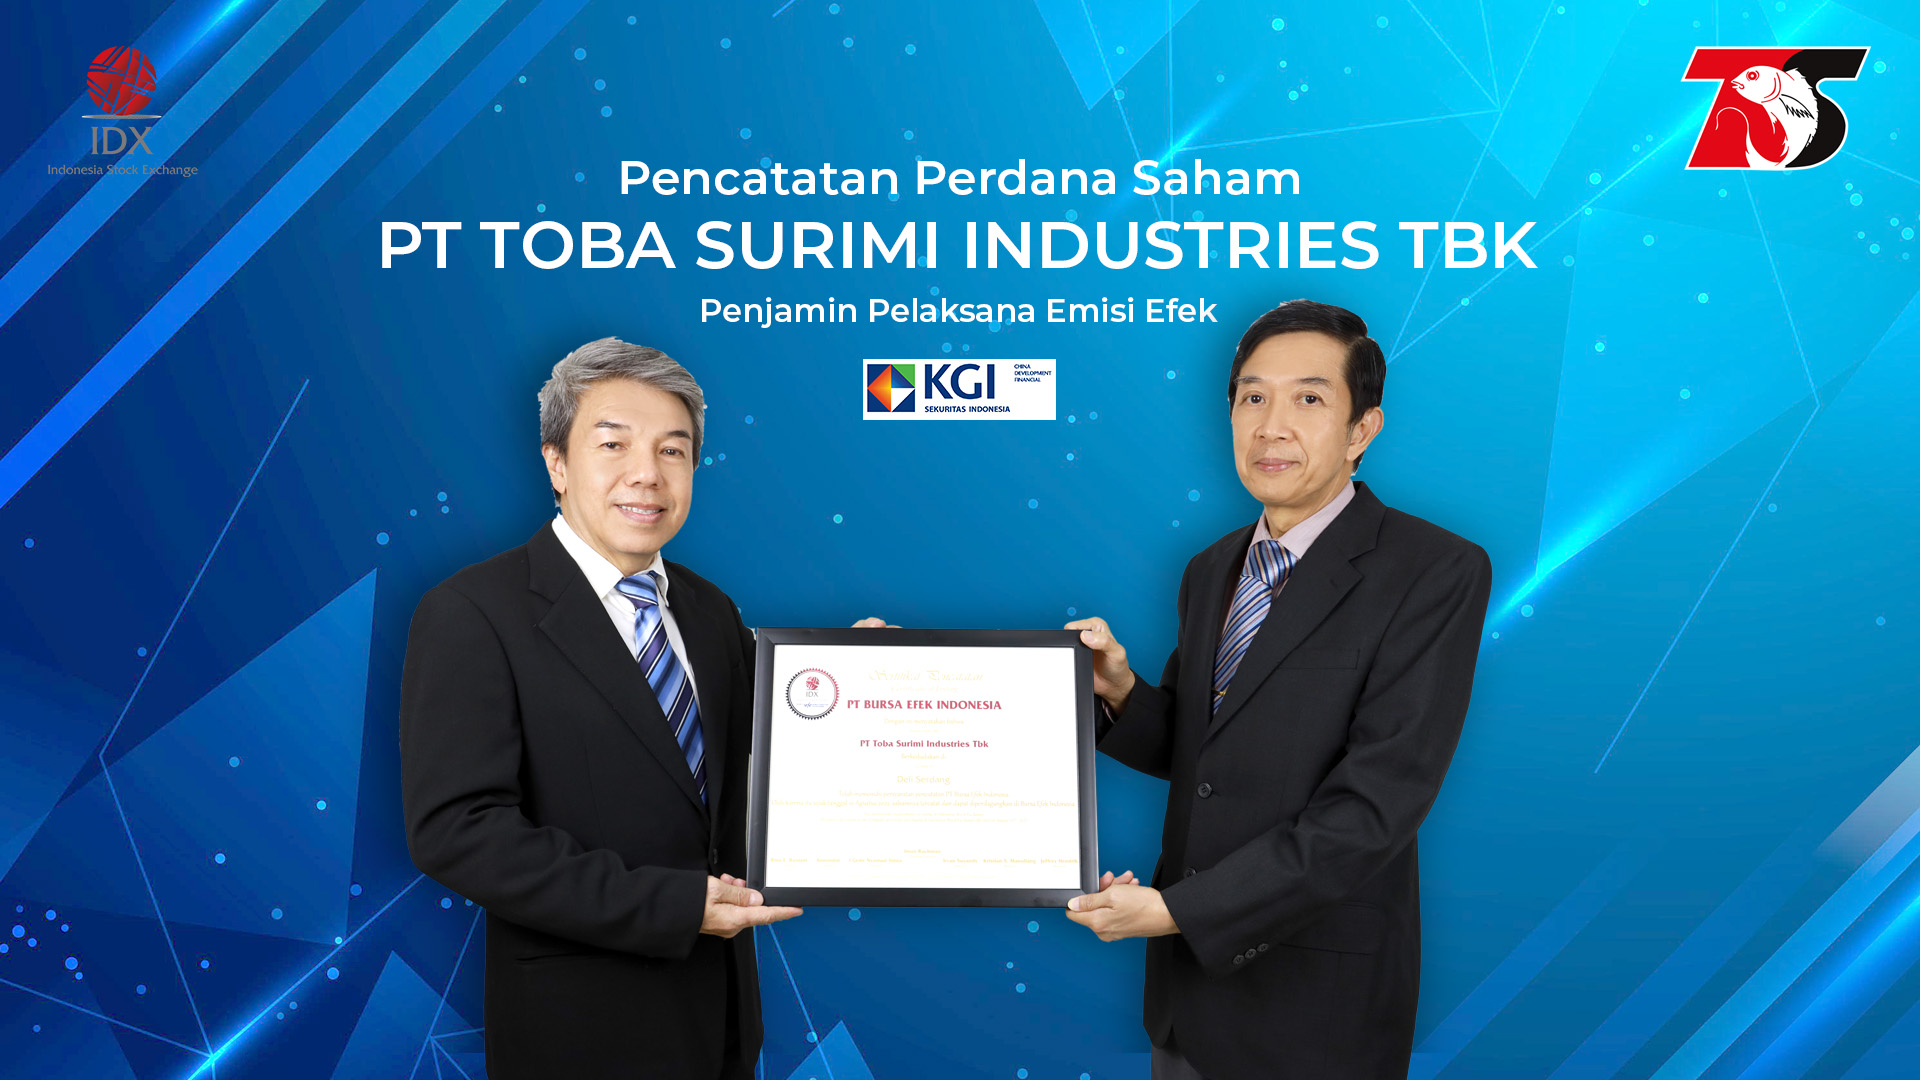 Toba Surimi Industries (CRAB) Gunakan Dana IPO Untuk Modal Kerja dan Beli Kapal Laut